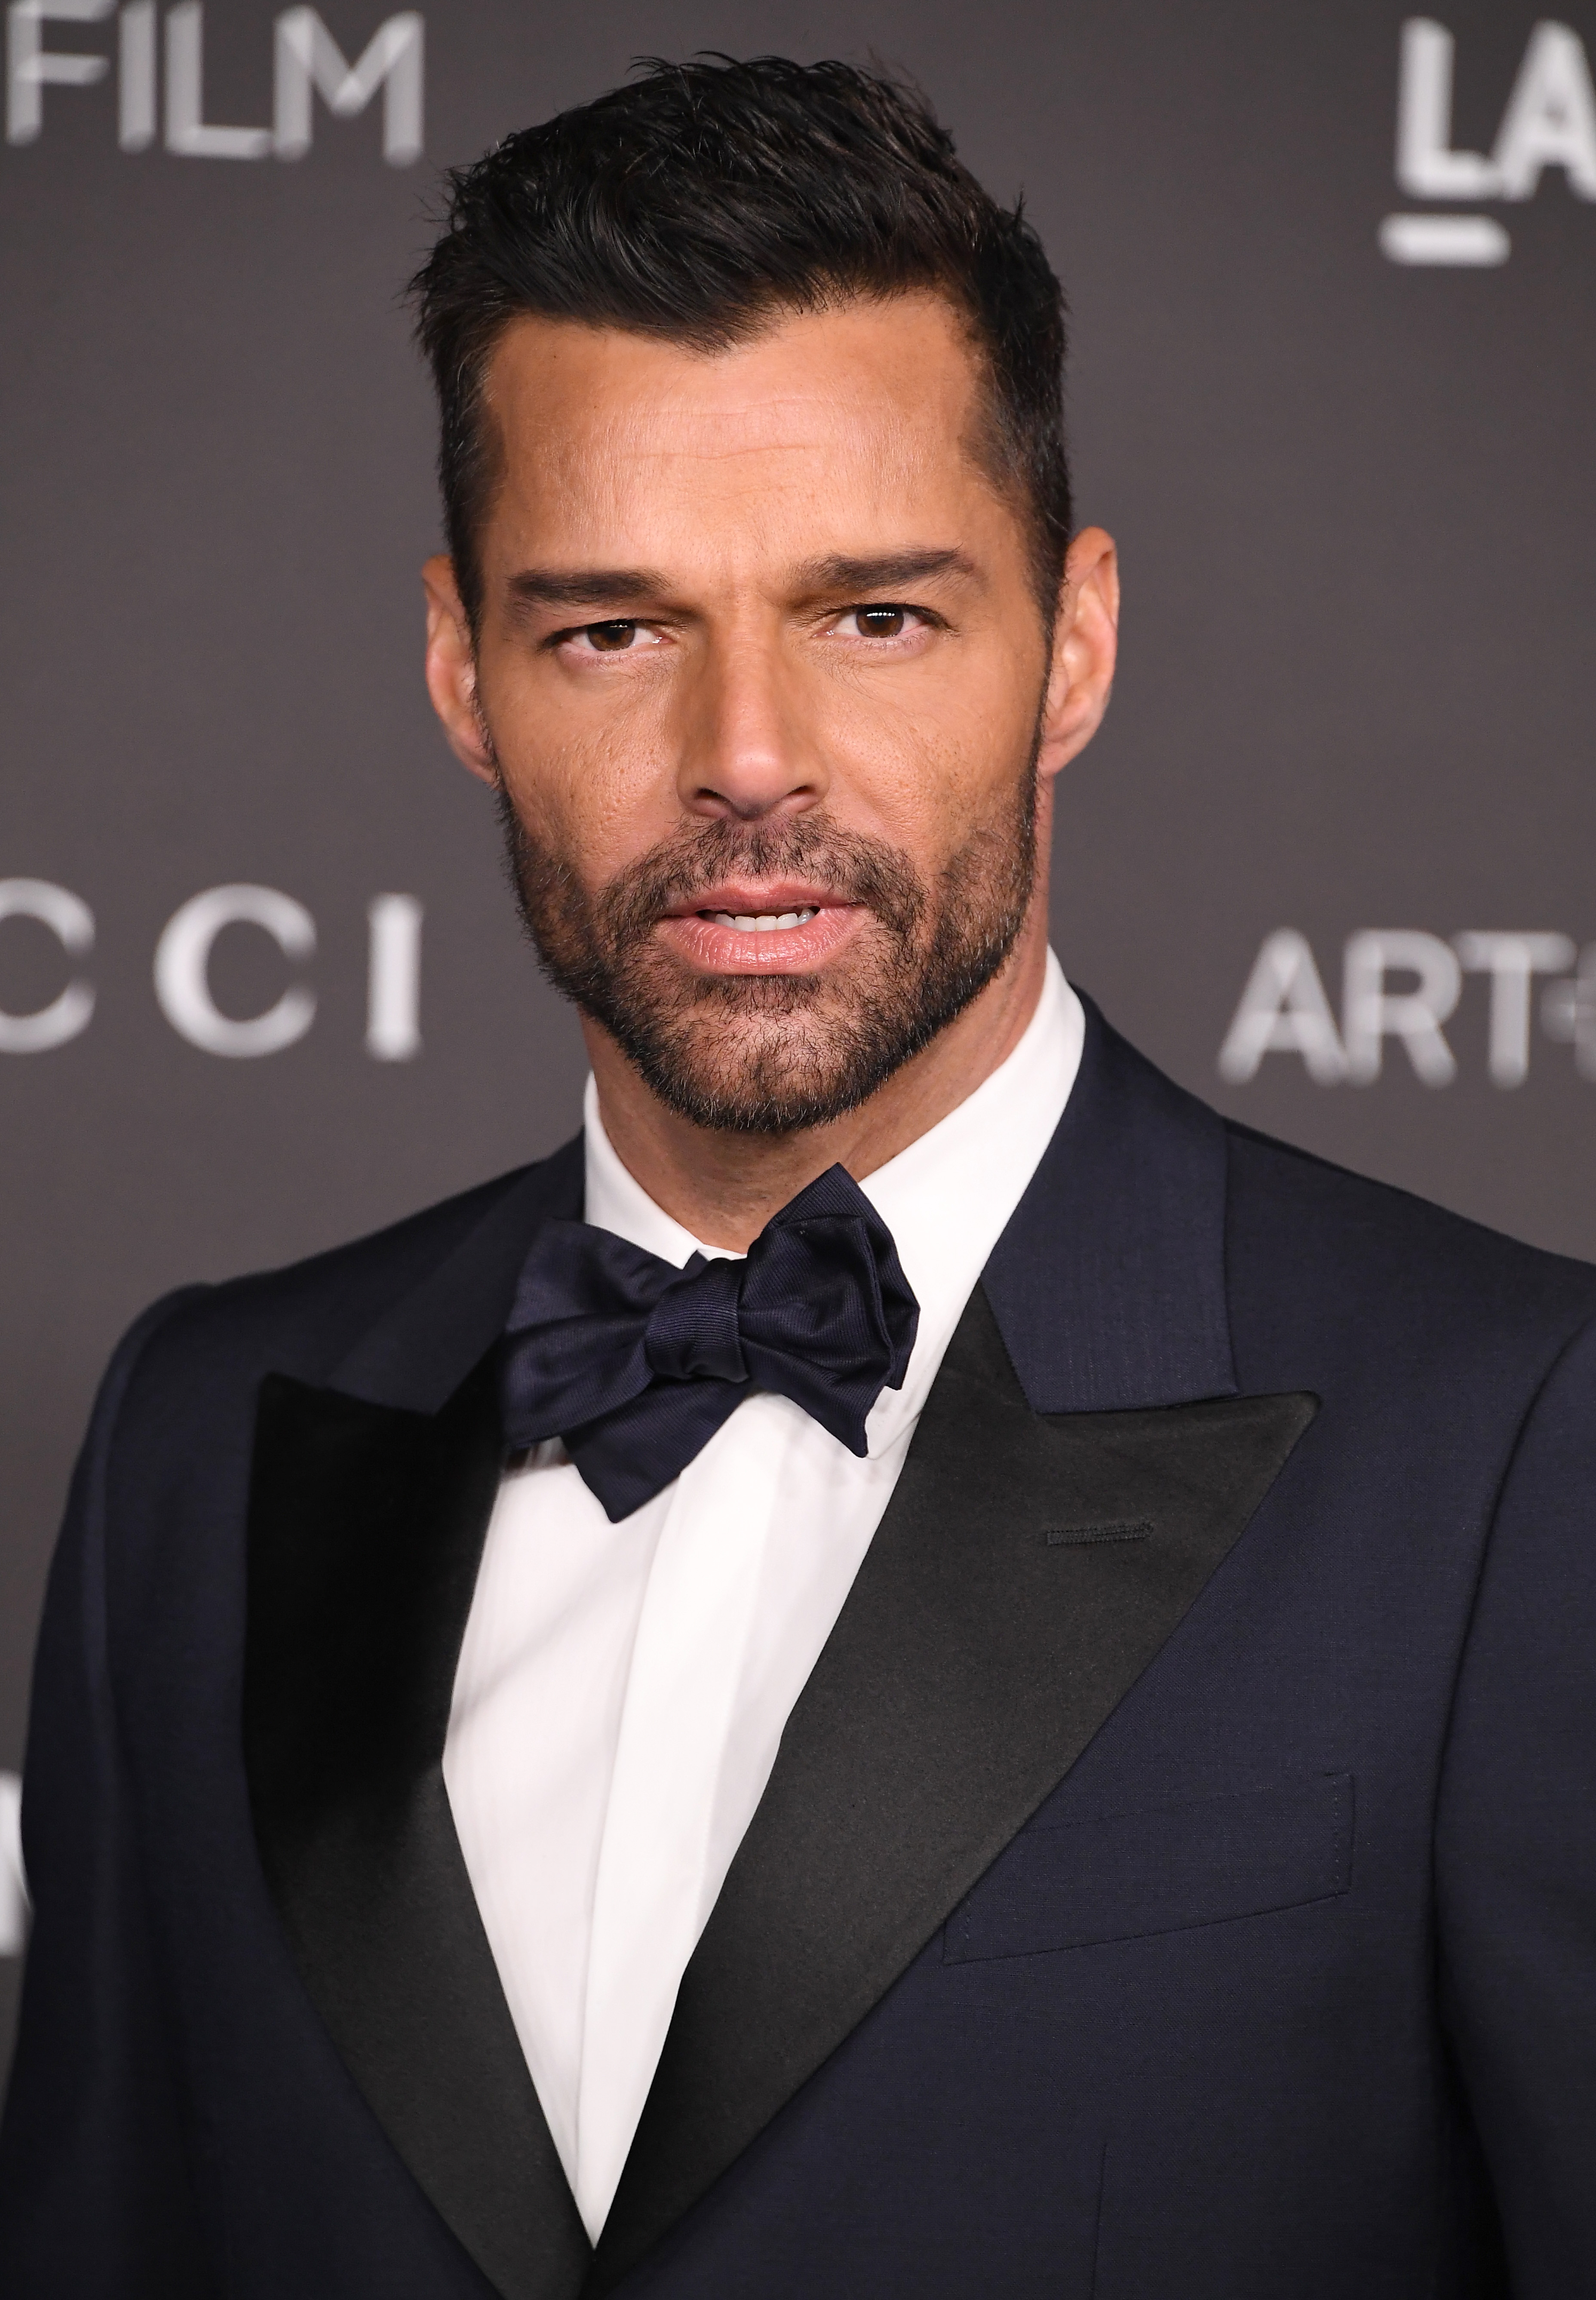 Ricky Martin lors du gala LACMA Art + Film à Los Angeles, en Californie, le 2 novembre 2019 | Source : Getty Images